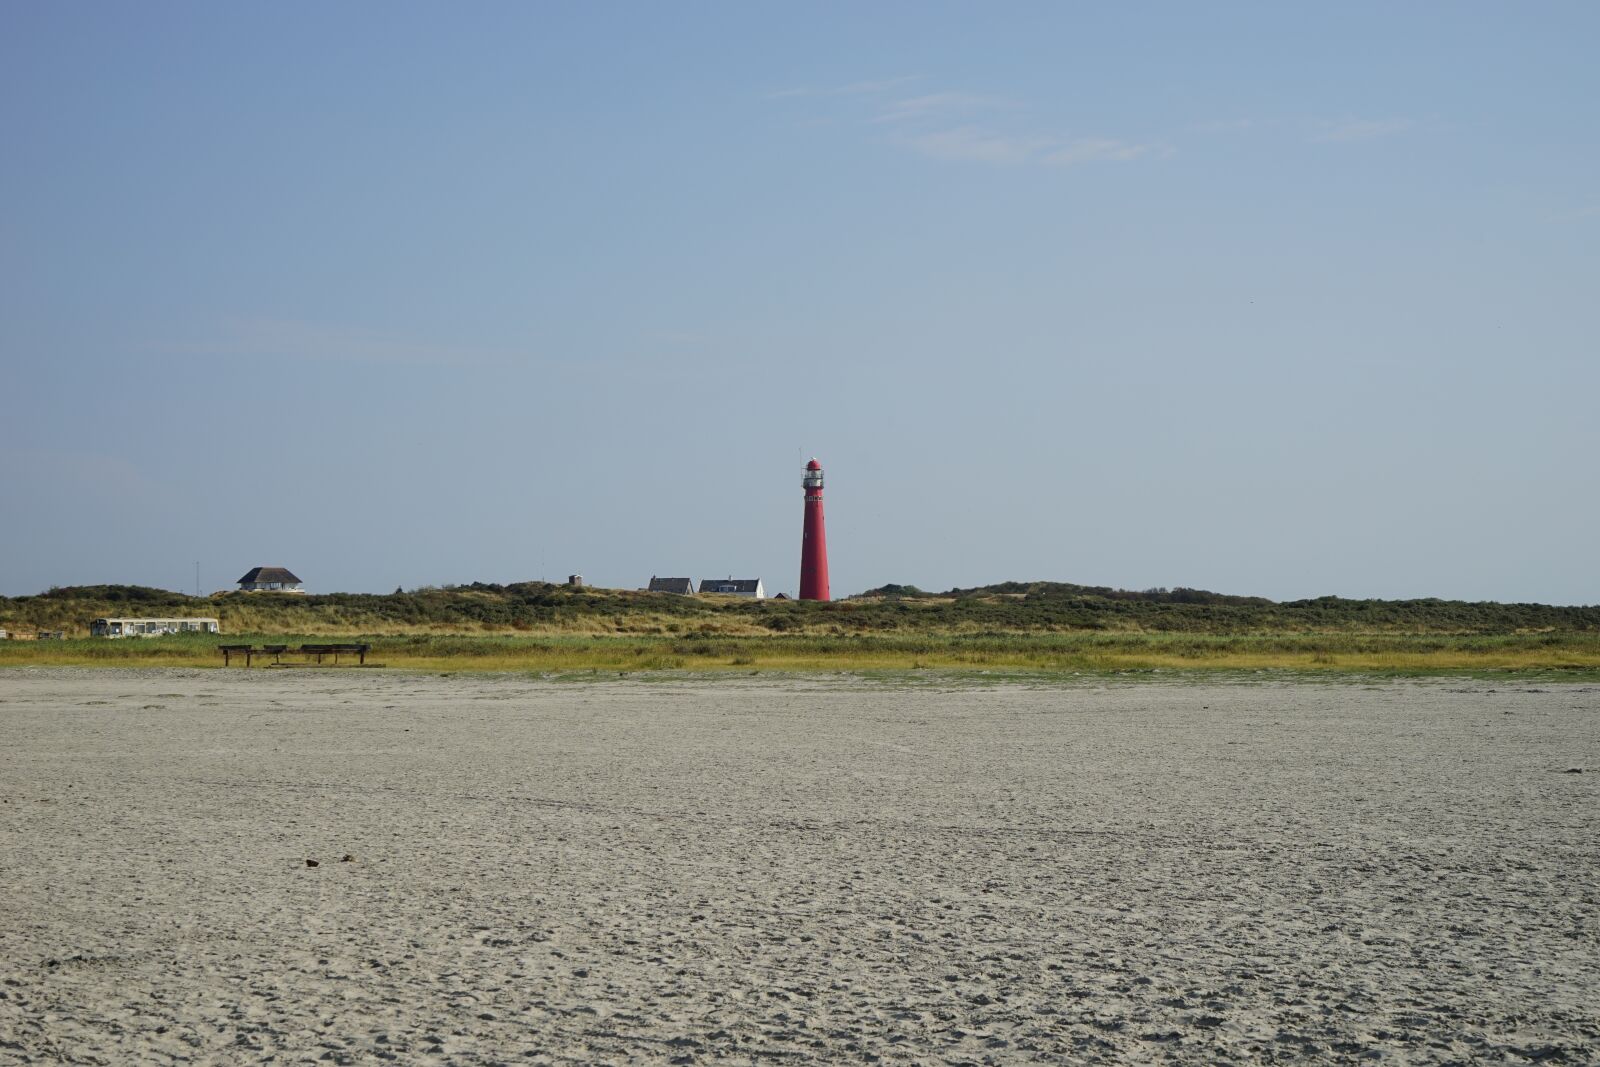 Sony a7 sample photo. Lighthouse, island, beach photography